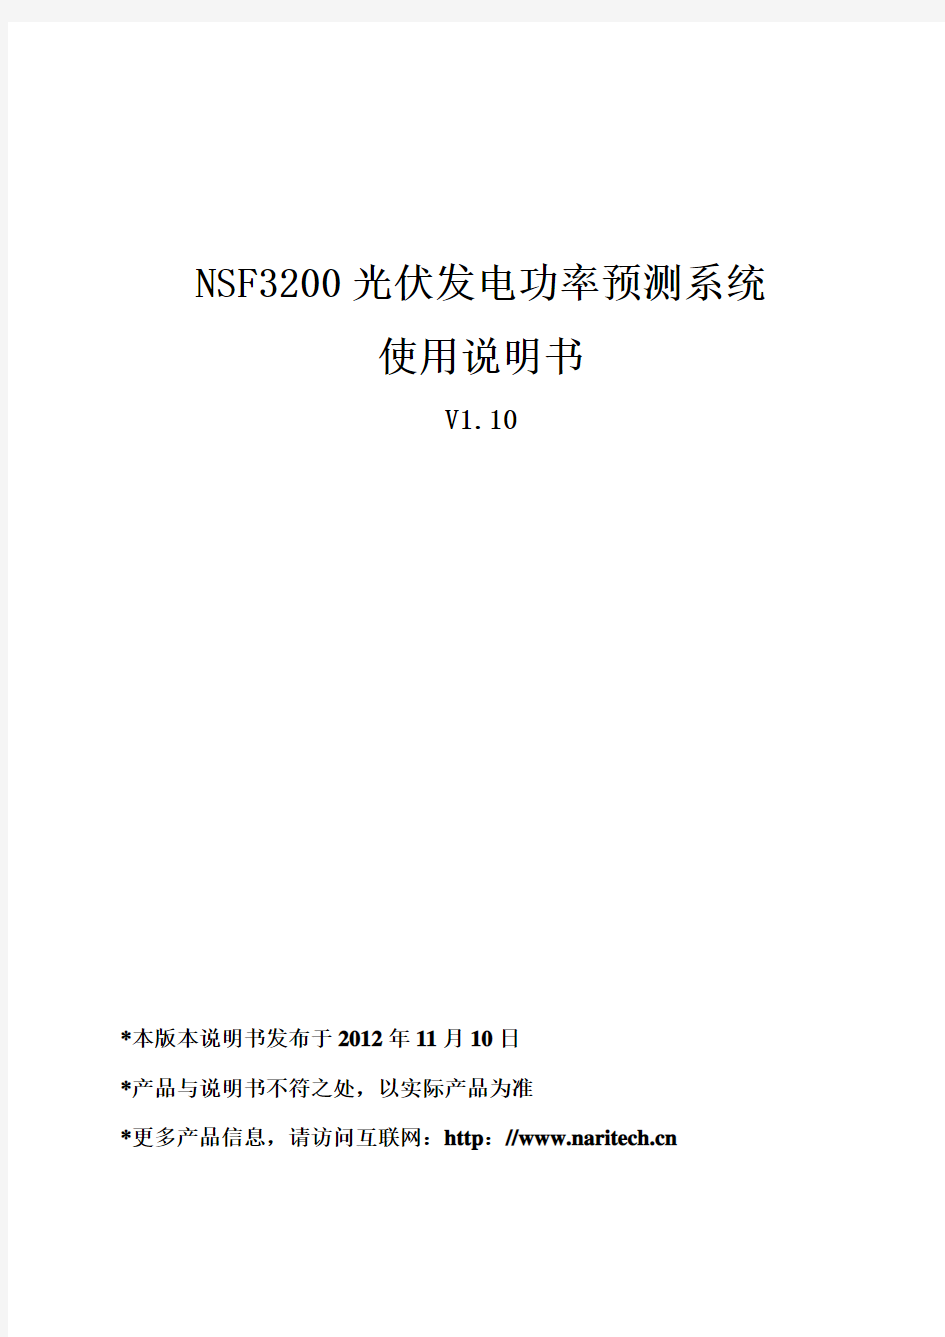 NSF3200光伏发电功率预测系统使用说明书V1.10_20130306要点